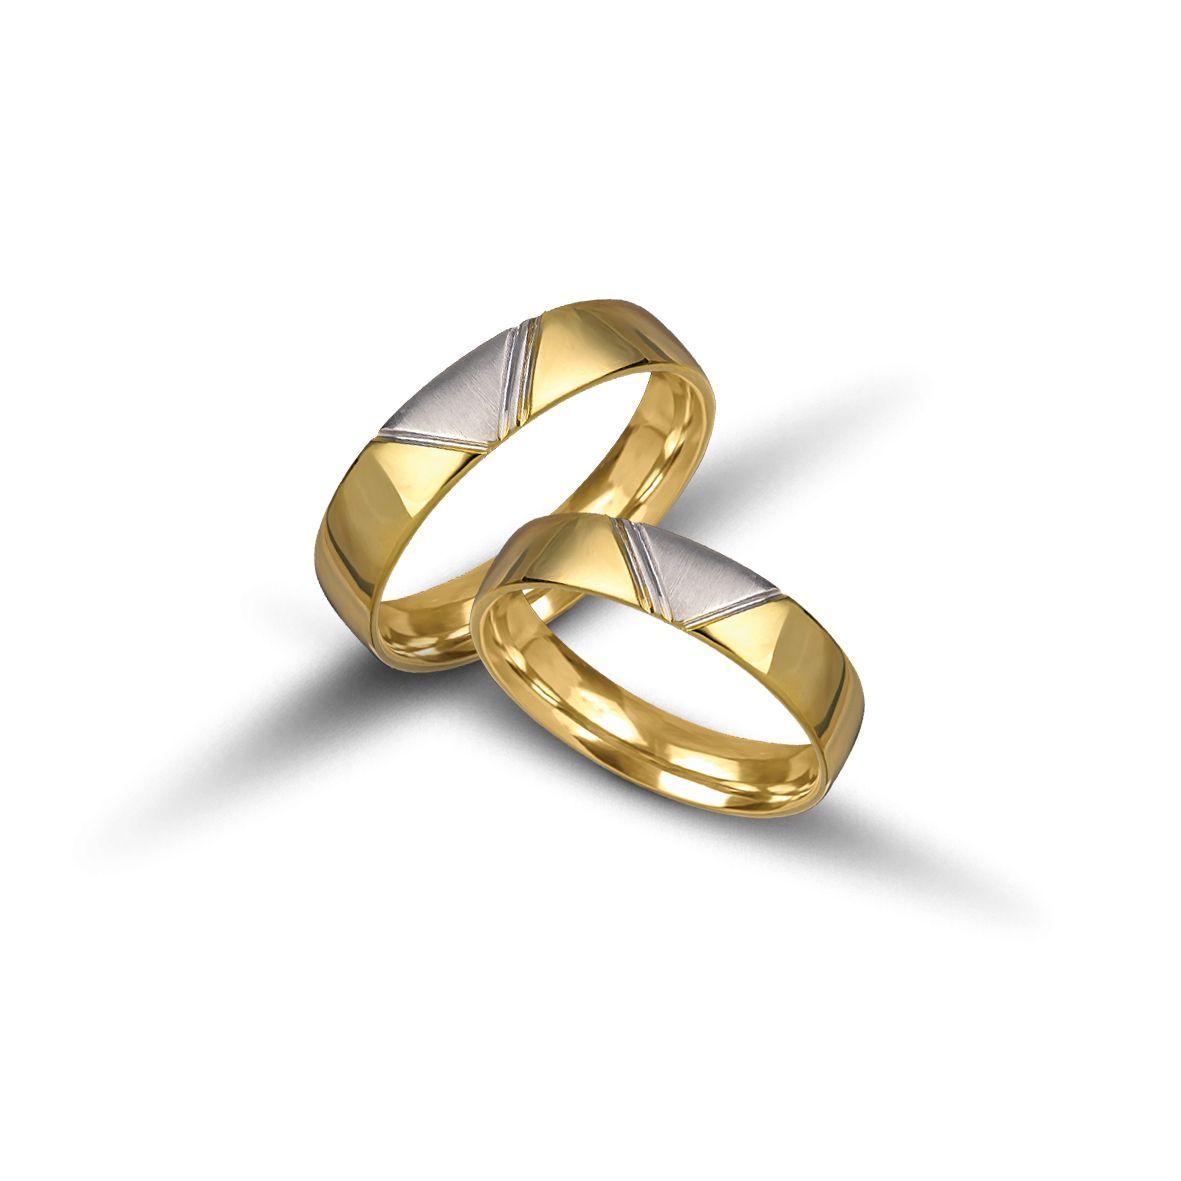 White gold & gold wedding rings 5mm (code VK2004/50)